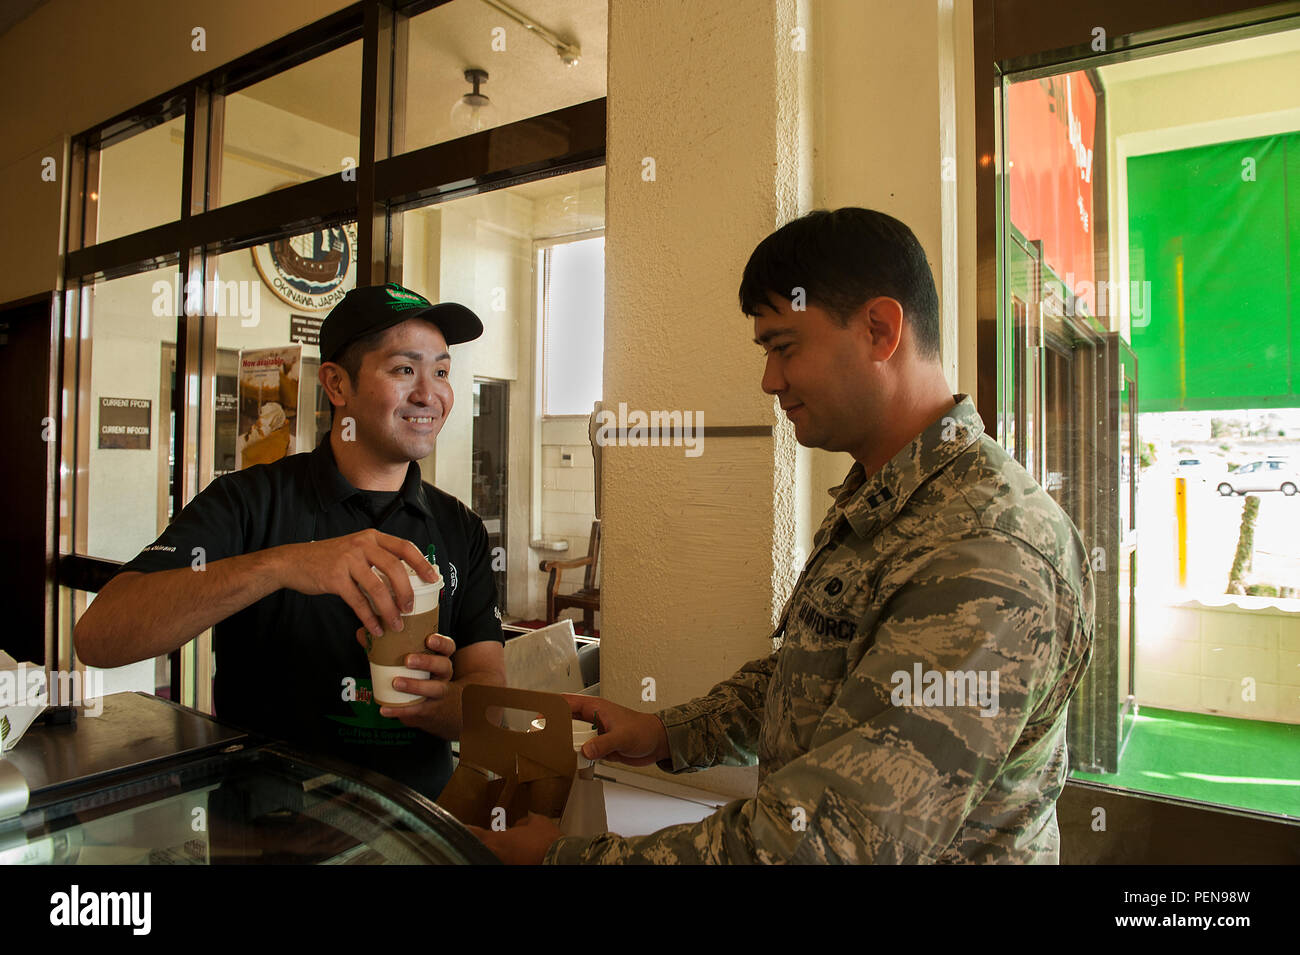 El capitán de la Fuerza Aérea de EE.UU. Joshua Caragan, 18ª Ala oficial de igualdad de oportunidades, obtiene el café de Koji, Kamekawa Diaria Cafetería cajero, en el balancín NCO Club, del 30 de diciembre de 2015, en la Base Aérea de Kadena, Japón. El basculante NCO Club está cerrando sus puertas para dar paso a una nueva planta viniendo en 2017. (Ee.Uu. Foto de la fuerza aérea por Aerotécnico de Primera Clase Corey M. Pettis) Foto de stock